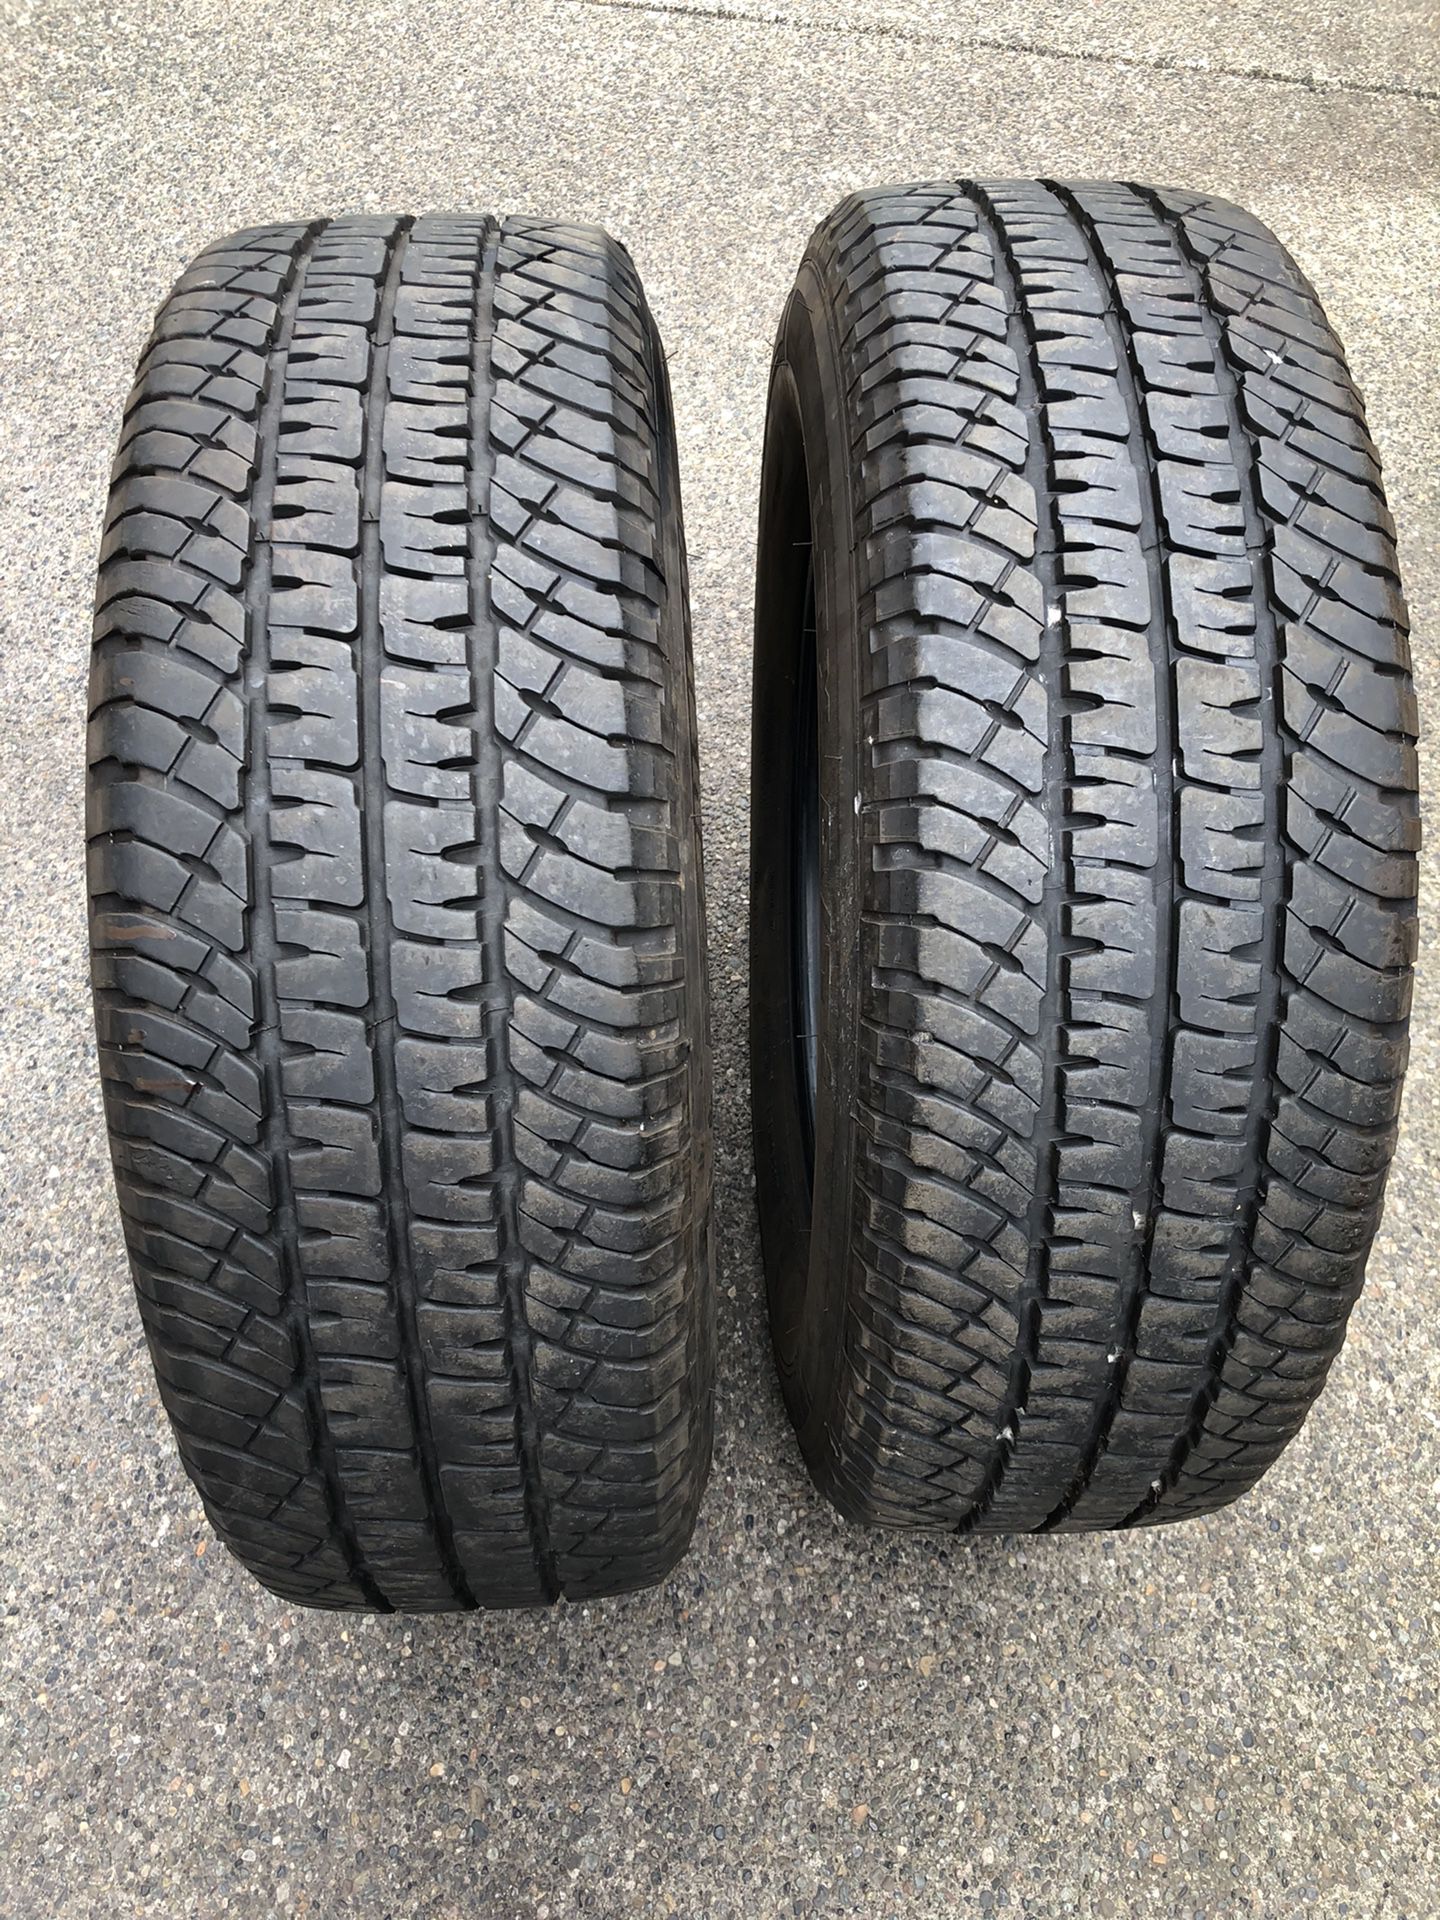 2 Michelin tires 265/70/18 load E 11/32